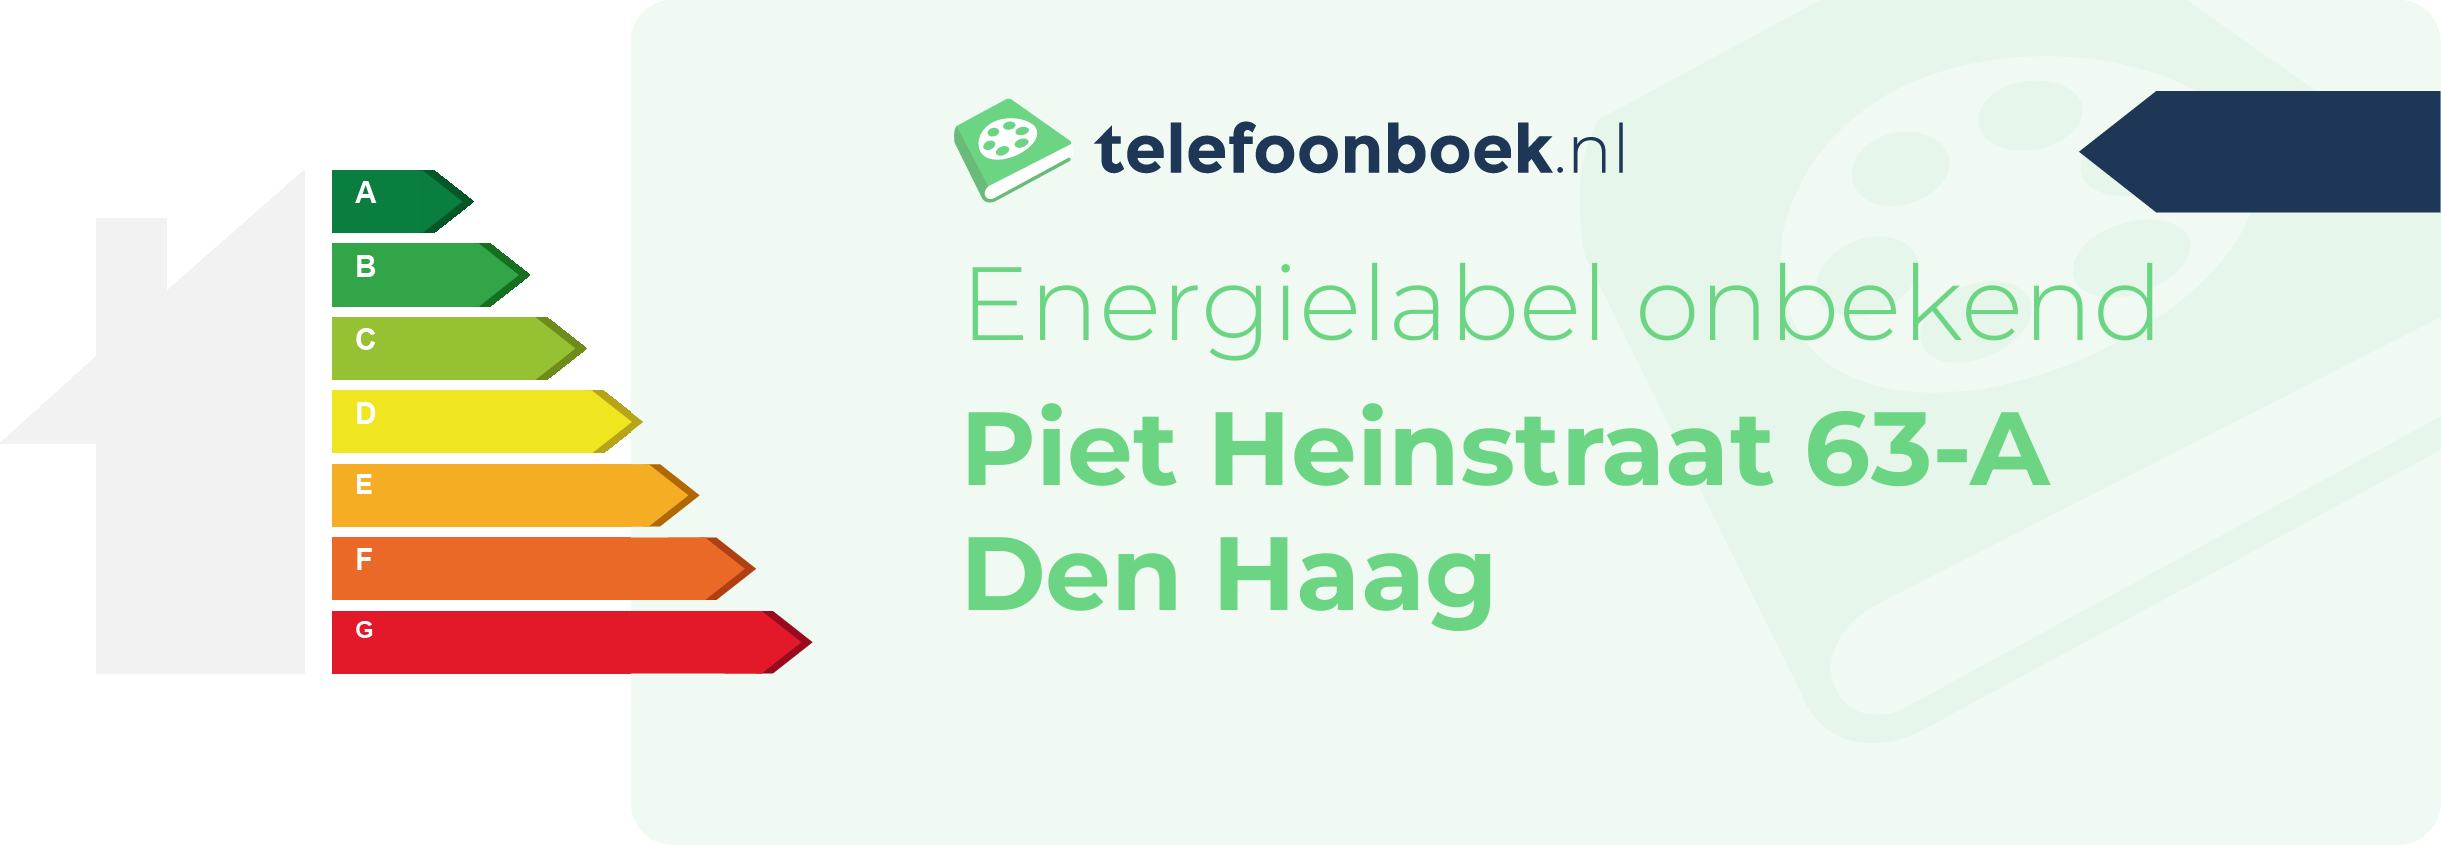 Energielabel Piet Heinstraat 63-A Den Haag